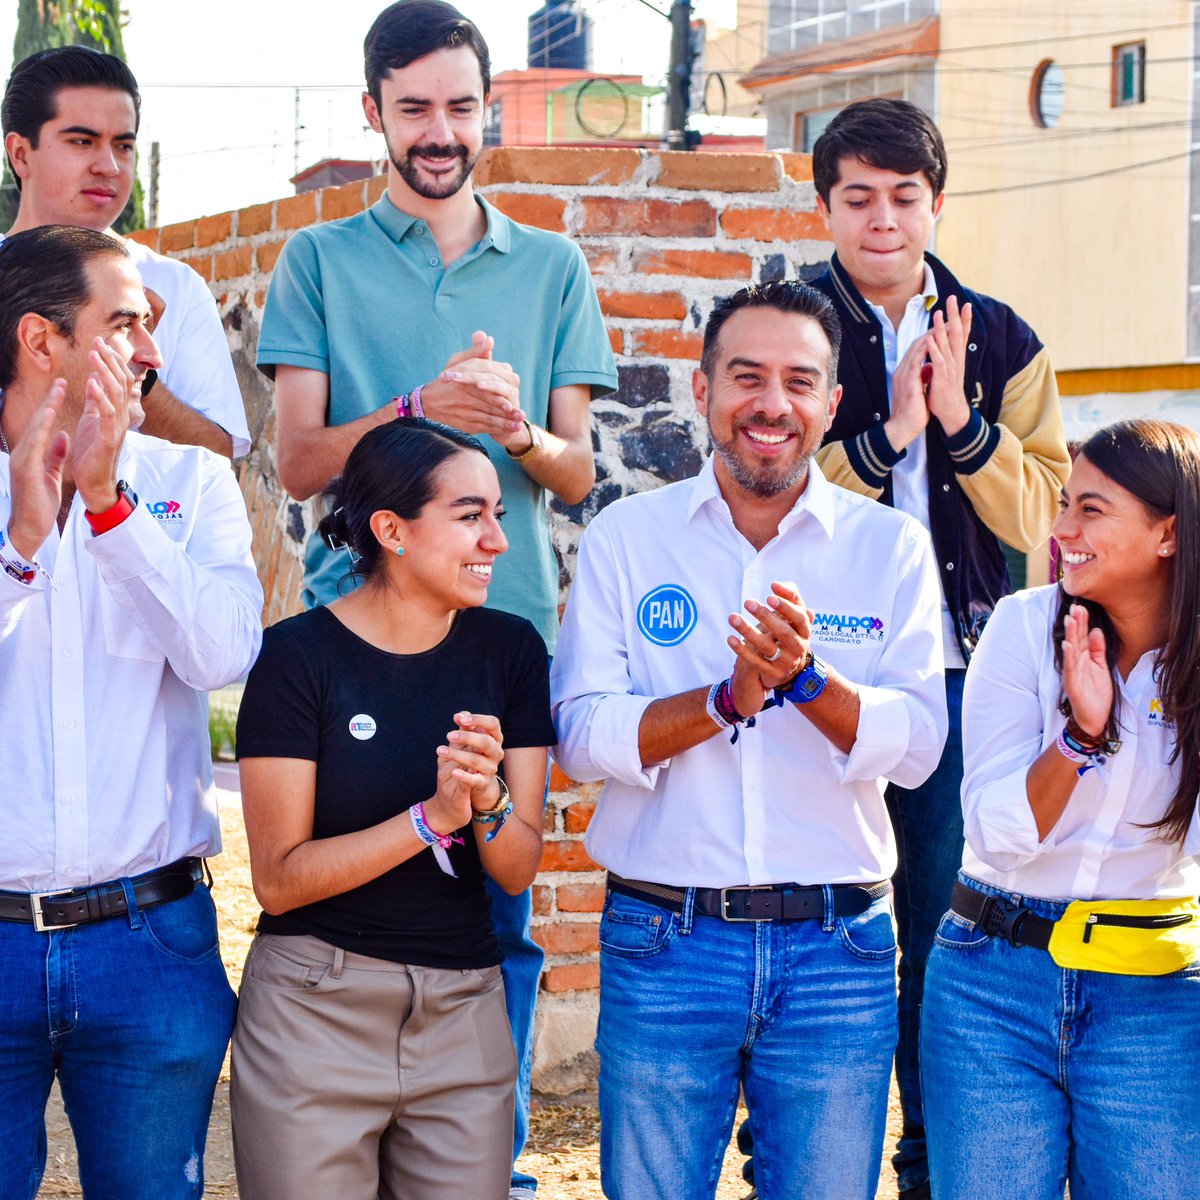 Los jóvenes son el futuro de nuestro país y mi compromiso con ustedes será desde el congreso para representarlos y brindarles más y mejores oportunidades  👏🏻

¡Vamos por un #RumboSeguro para Puebla! 

#RumboSeguro #Puebla #Compromiso